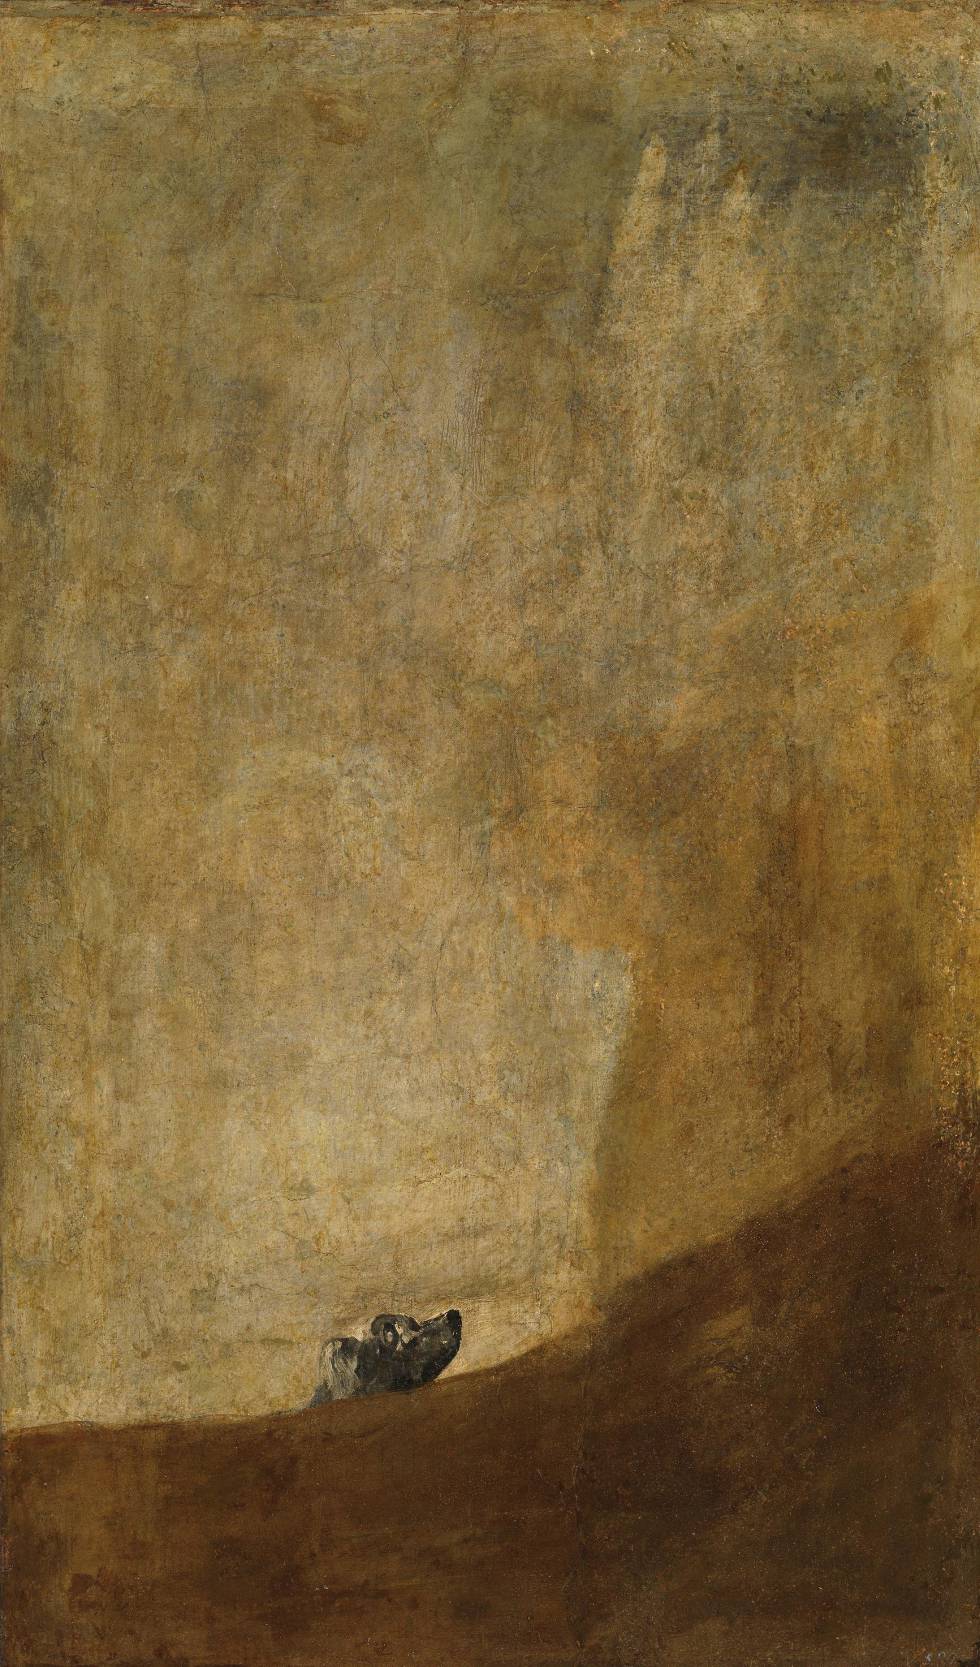 'Perro semihundido' (1820-23), de Goya, conservado en el Museo del Prado.